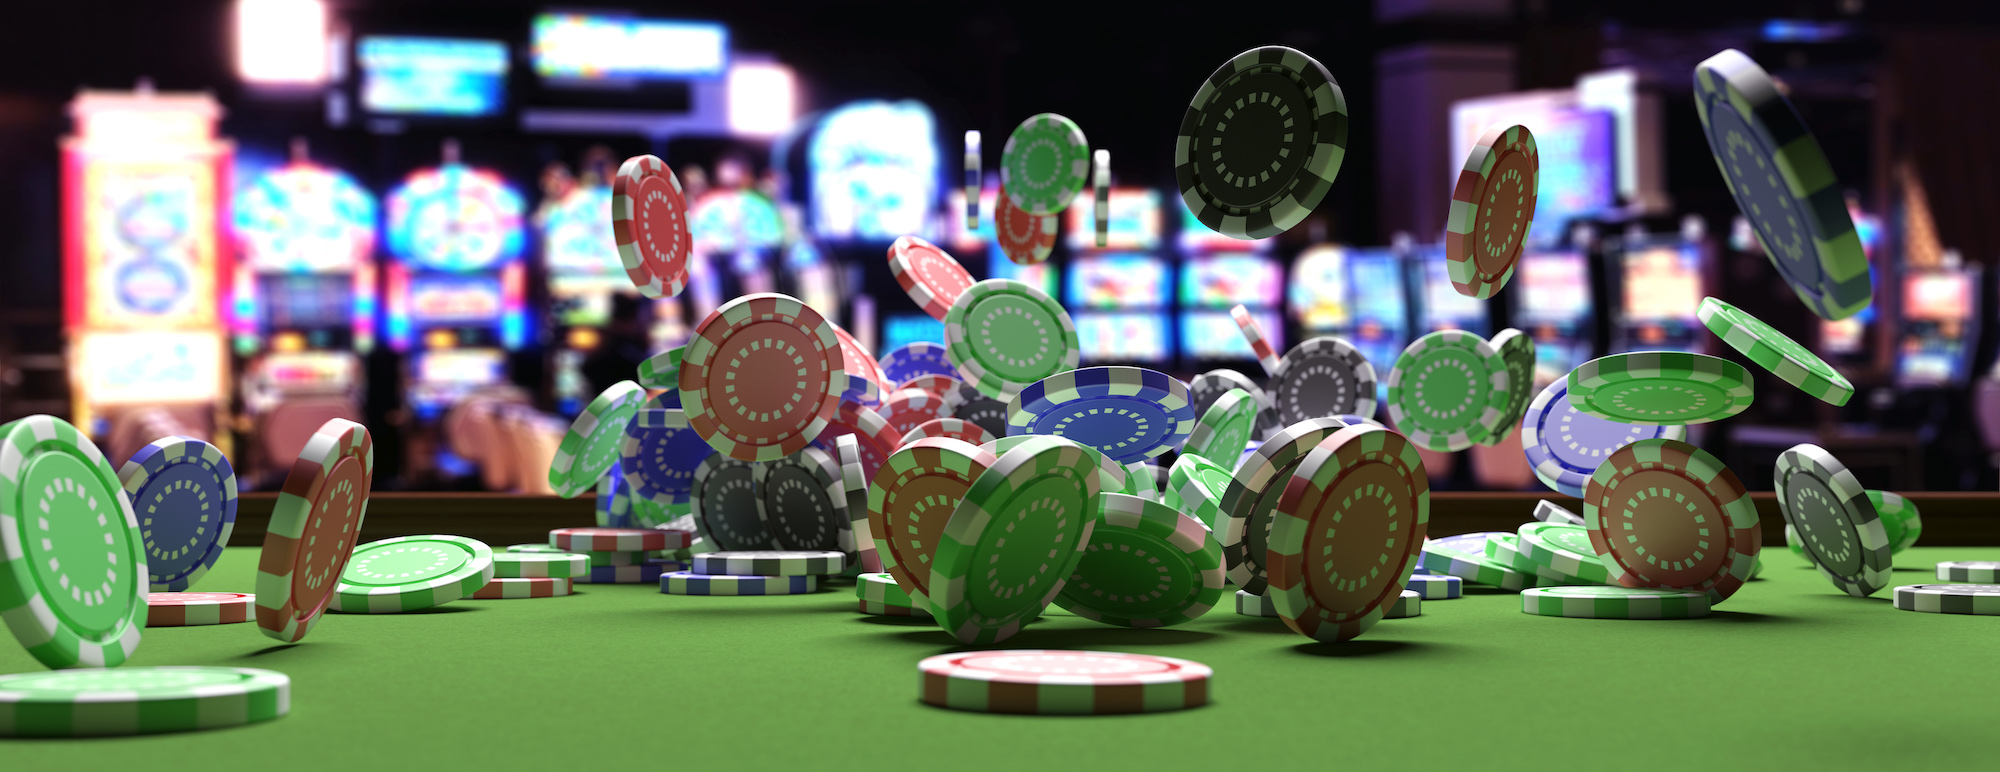 Европейские казино онлайн с бонусом ставки кс го на спорт